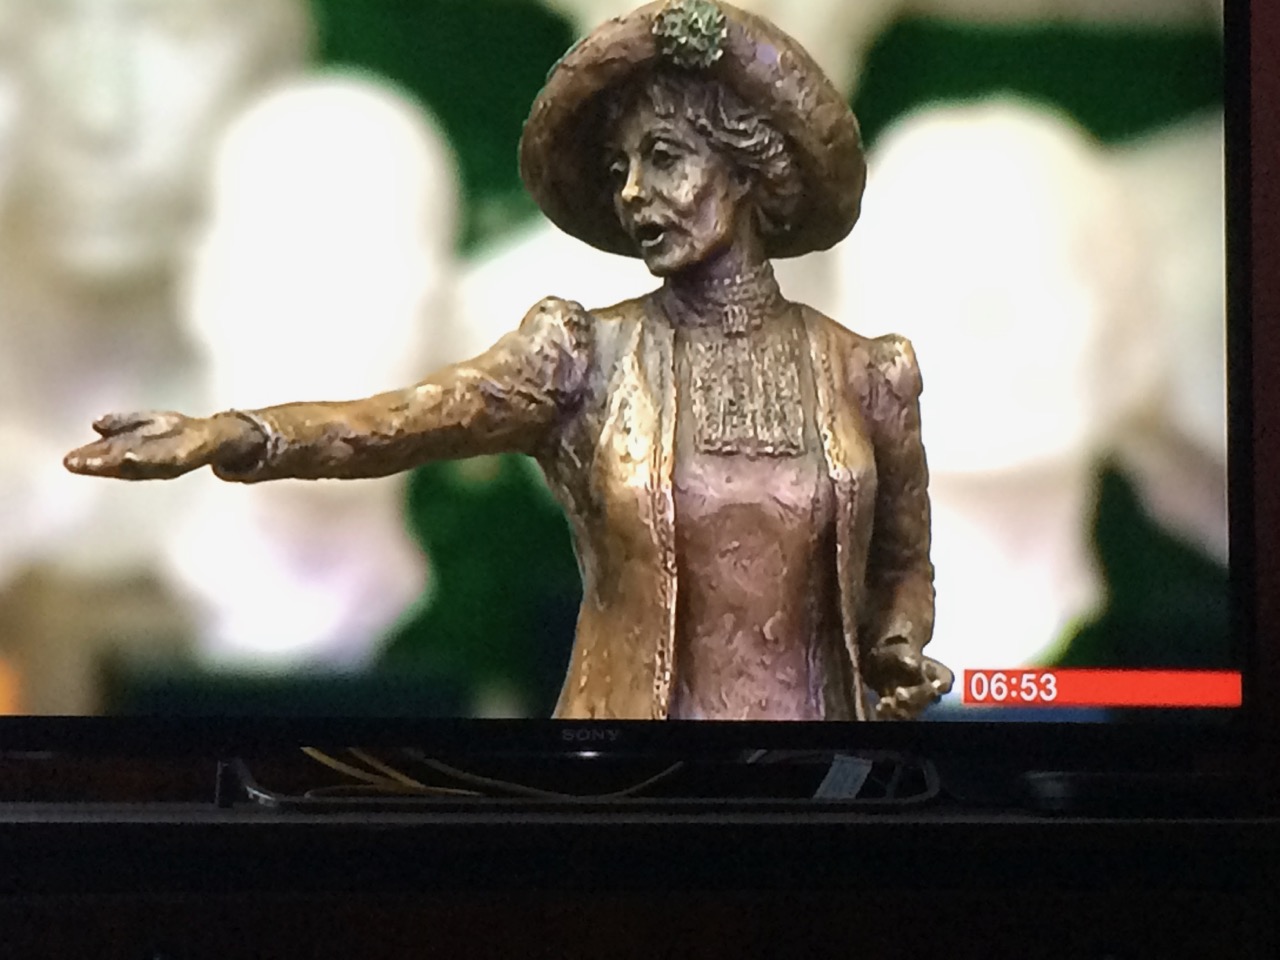 Emmeline Pankhurst maquette on BBC Breakfast